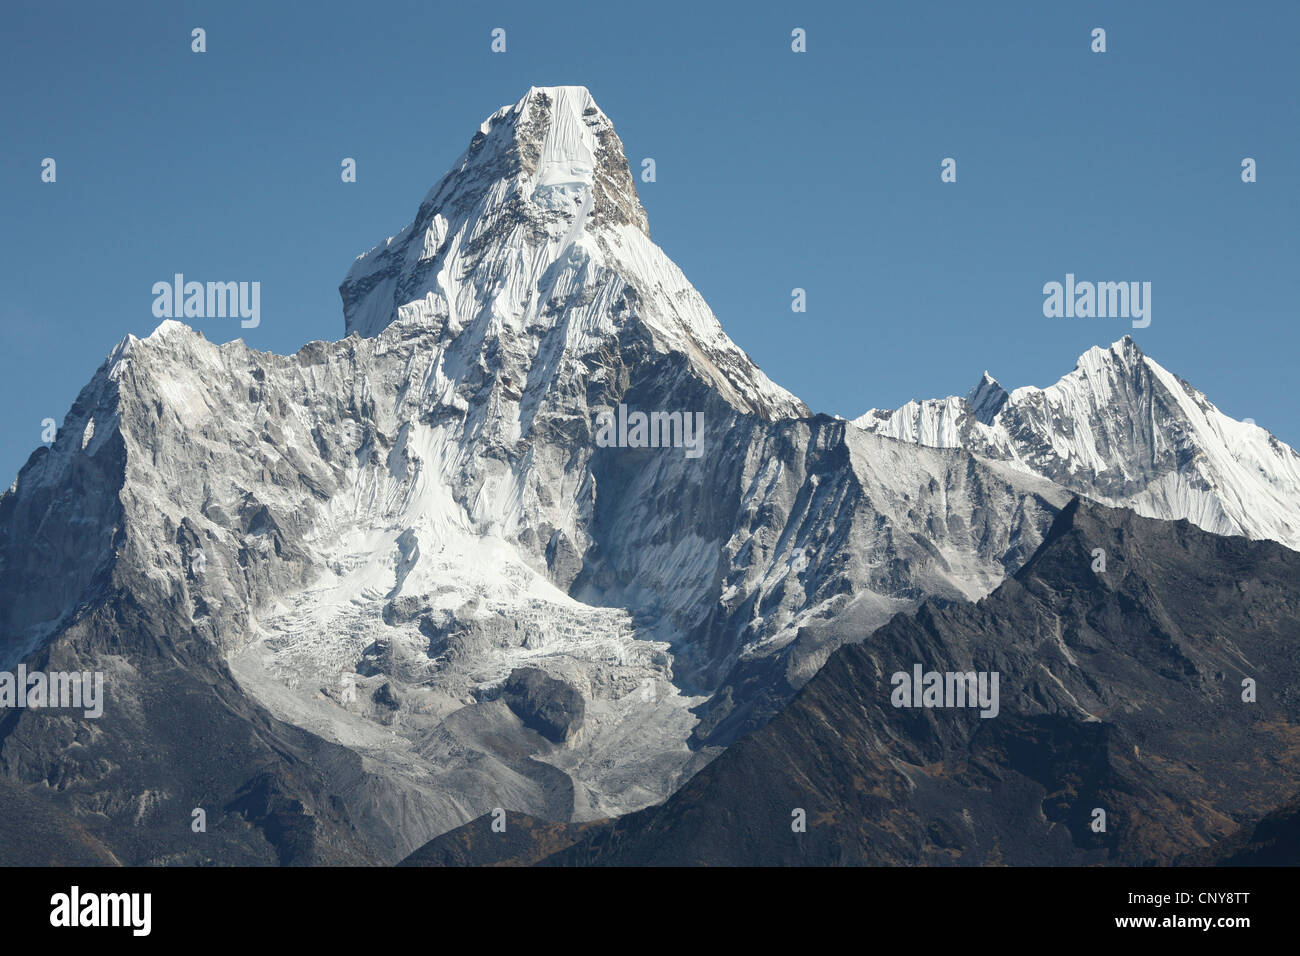 Monter l'Ama Dablam (6 812 m) dans la région de Khumbu dans l'Himalaya, au Népal. Vue du village de Khunde. Banque D'Images